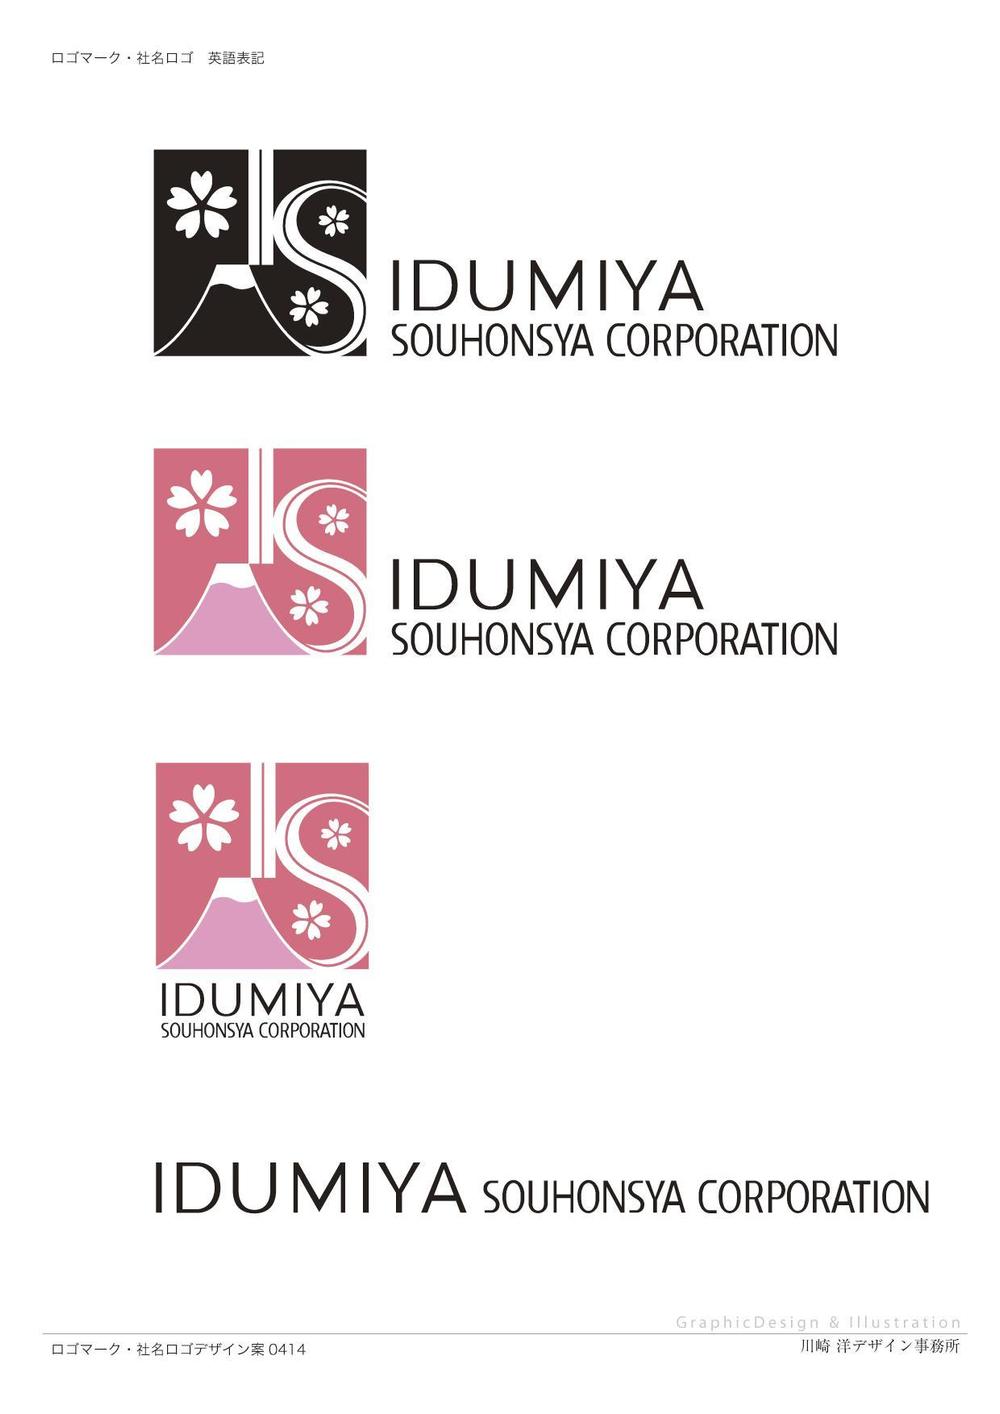 企業ロゴ及びロゴタイプのデザイン